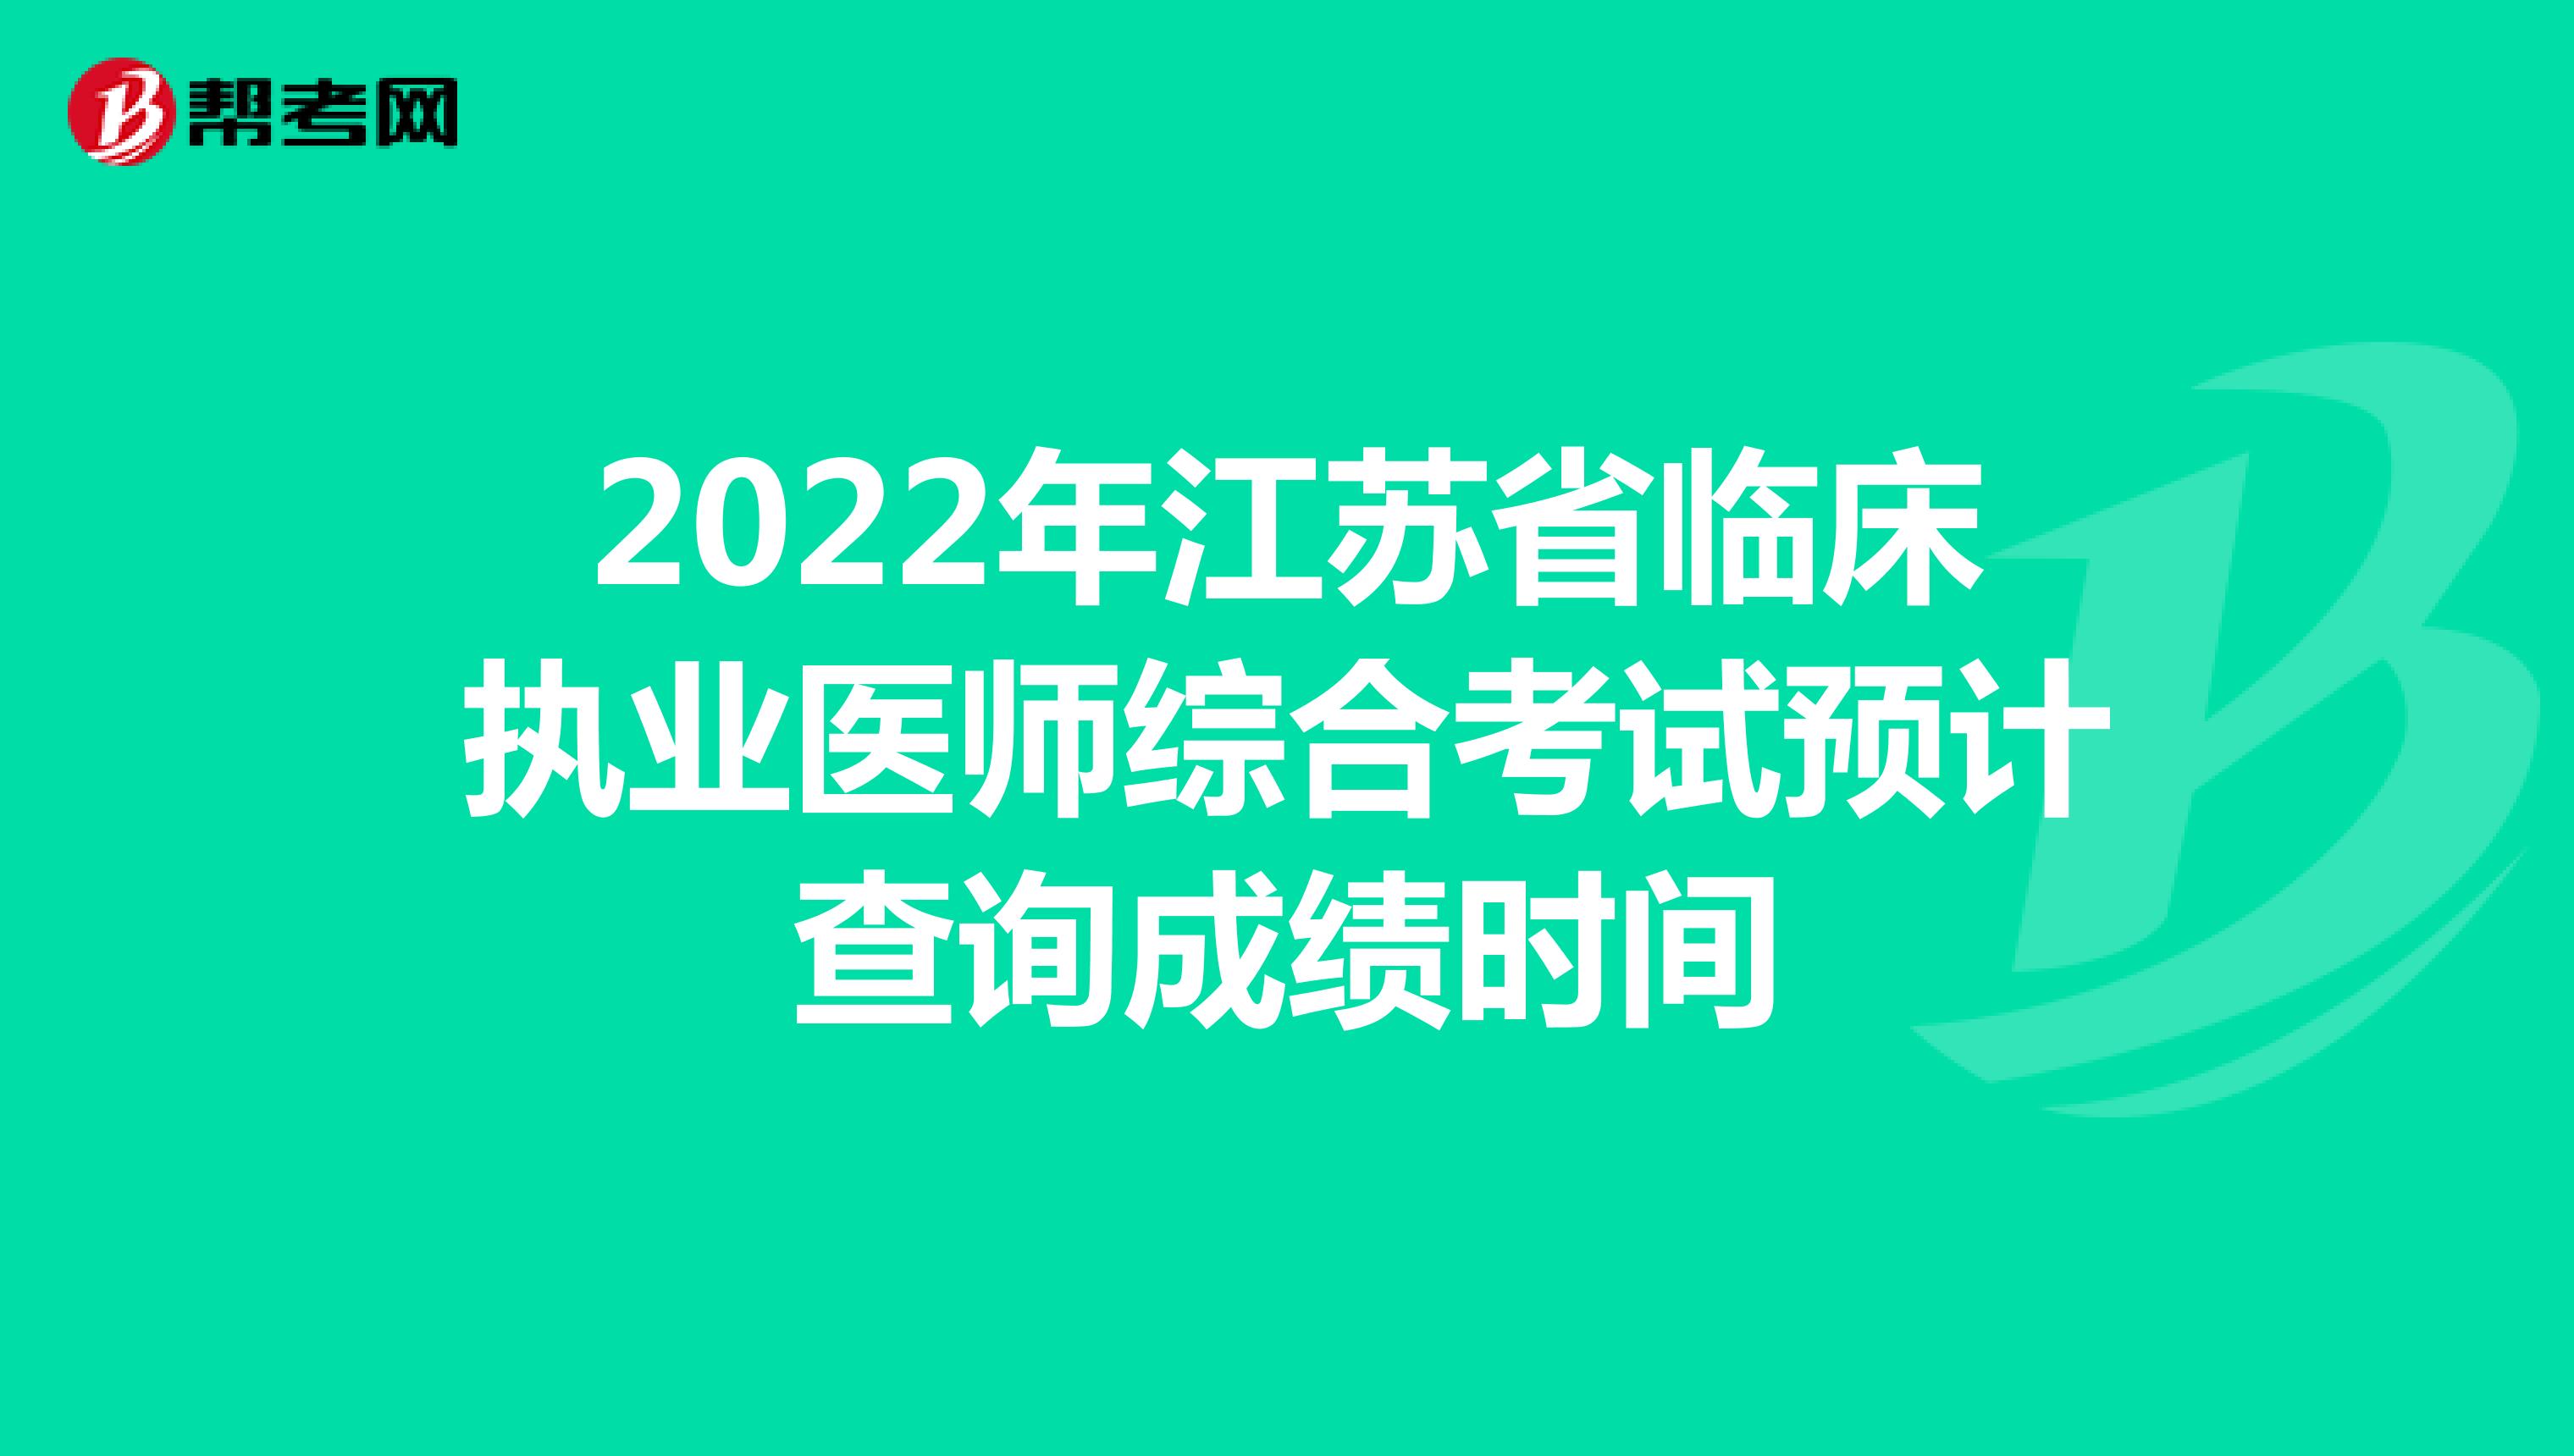 2022年江苏省临床执业医师综合考试预计查询成绩时间